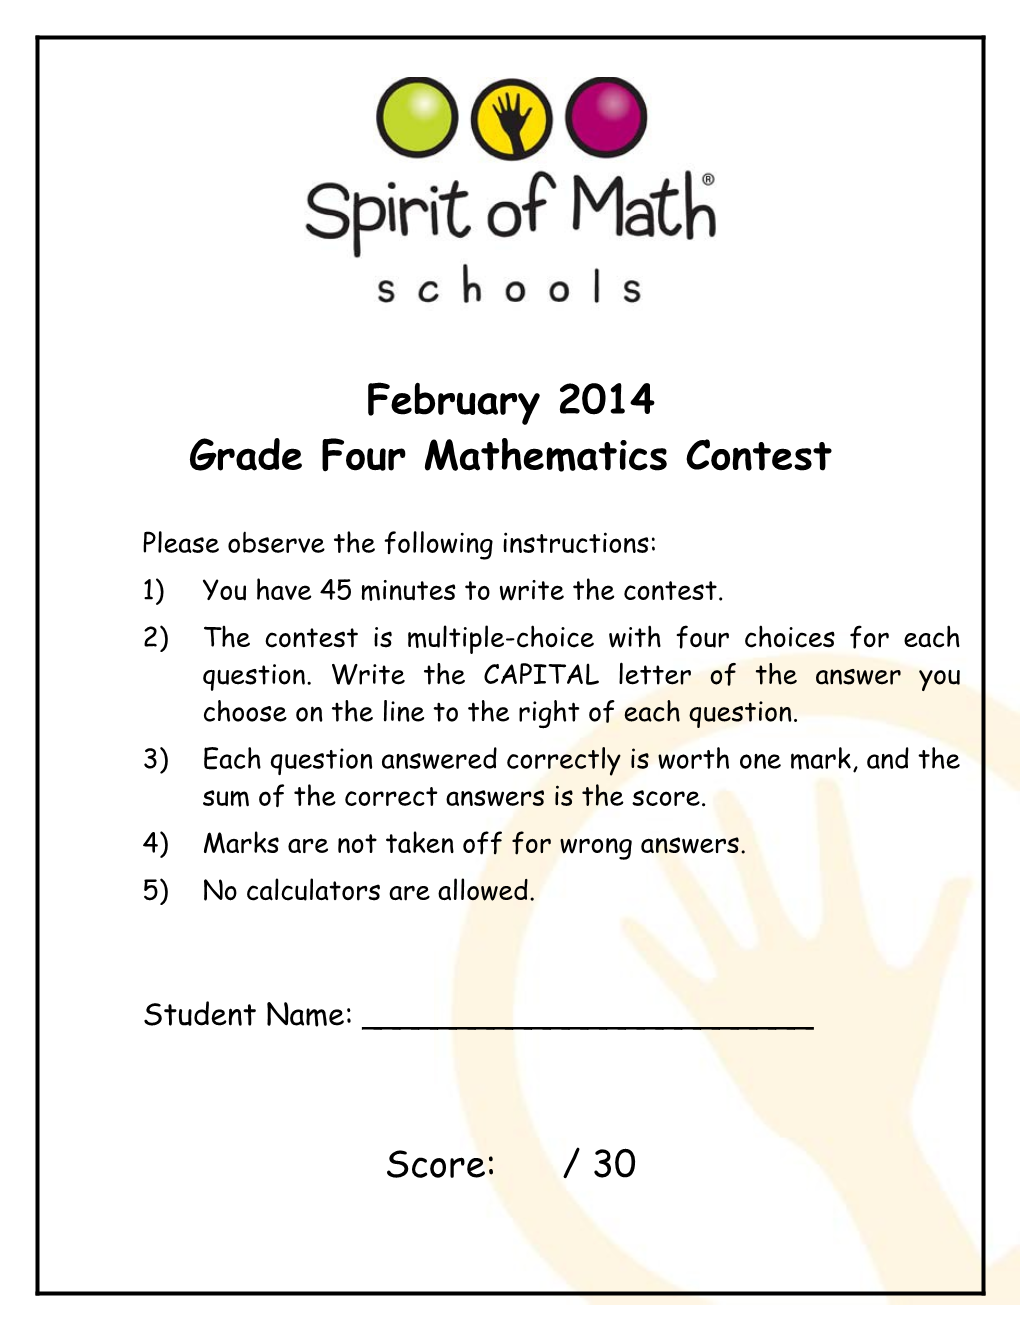 Grade Four Mathematics Contest